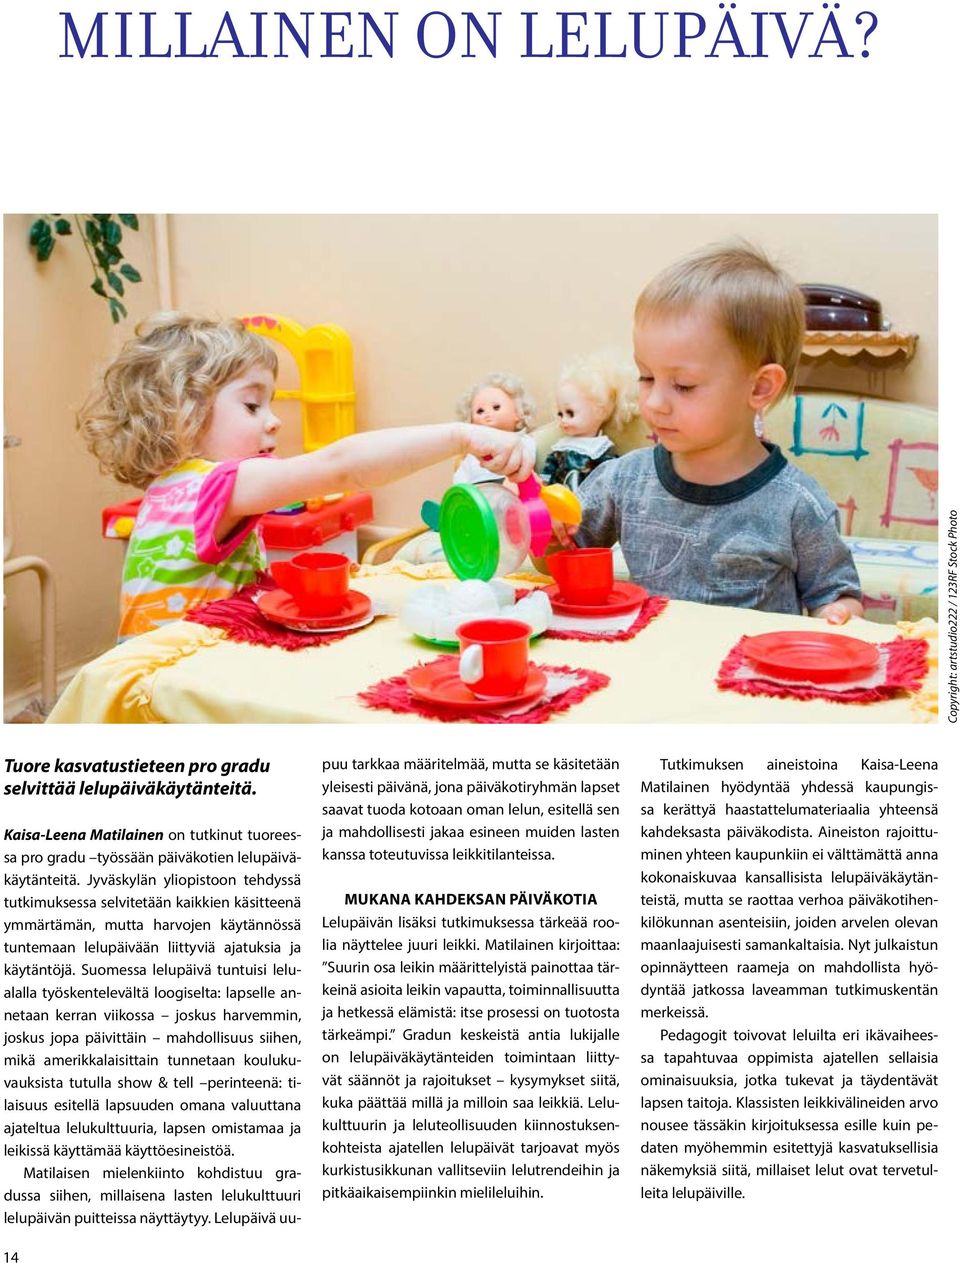 Jyväskylän yliopistoon tehdyssä tutkimuksessa selvitetään kaikkien käsitteenä ymmärtämän, mutta harvojen käytännössä tuntemaan lelupäivään liittyviä ajatuksia ja käytäntöjä.